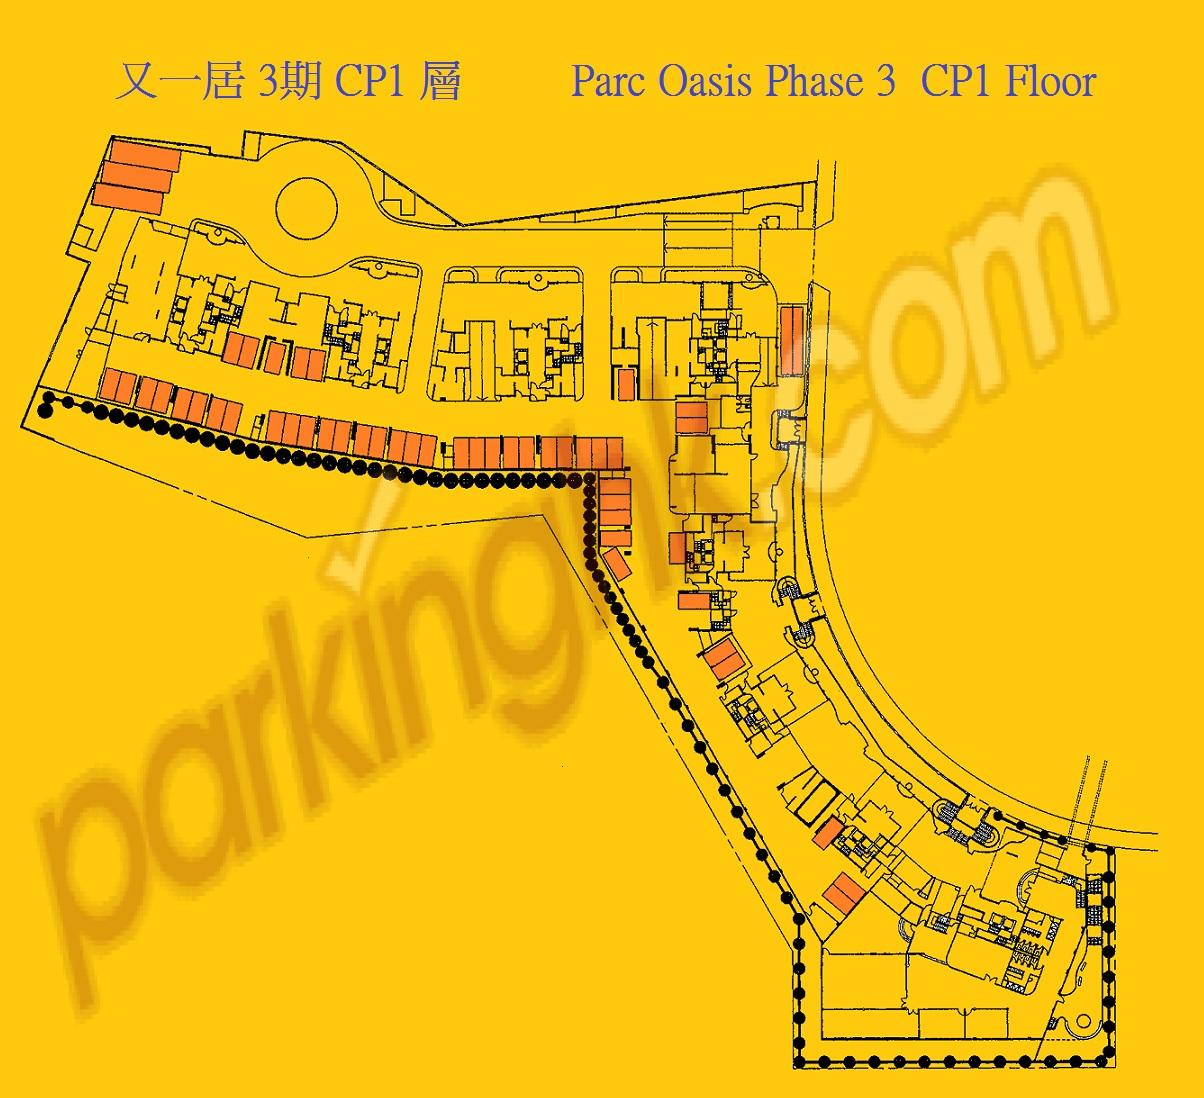  Yau Yat Chuen Carpark  Parc Oasis Road  Parc Oasis Phase 3  Floor plan 香港車位.com ParkingHK.com